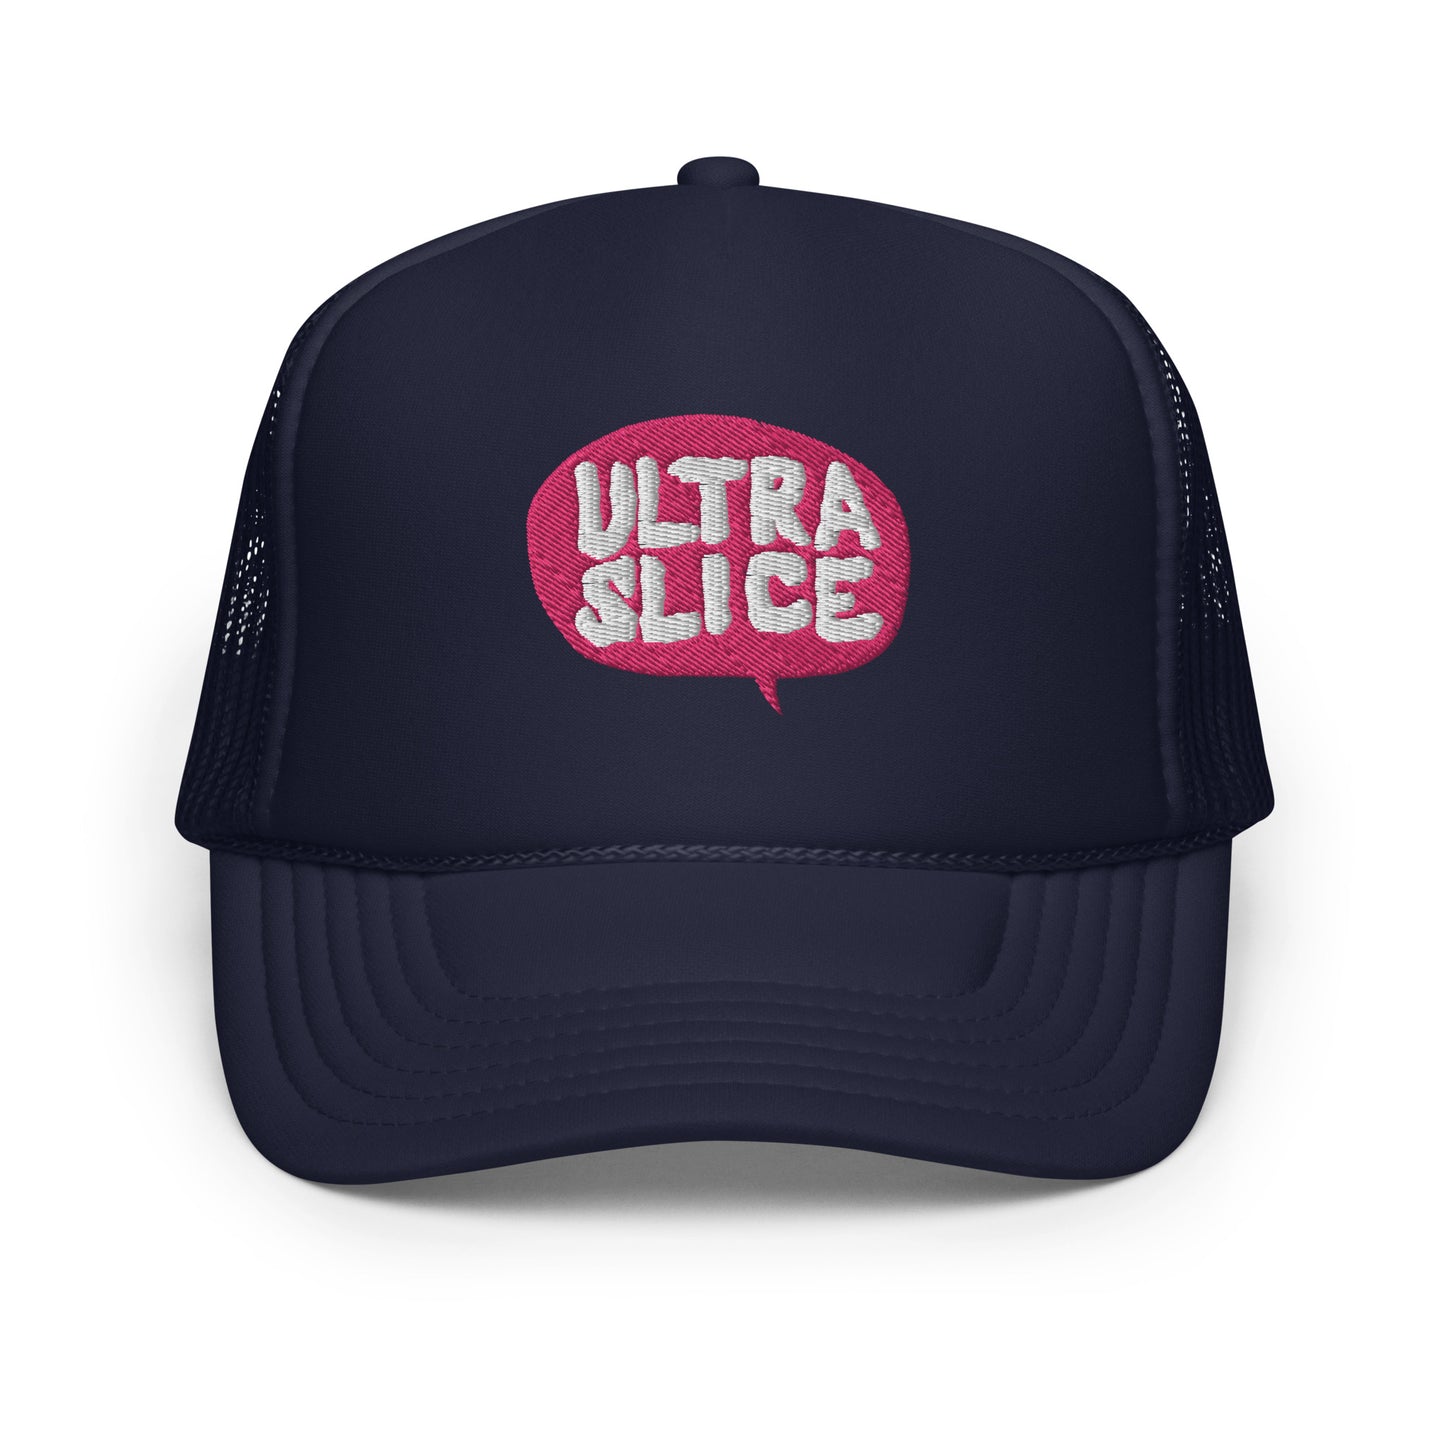 Ultra Slice - Say What? Foam Trucker hat